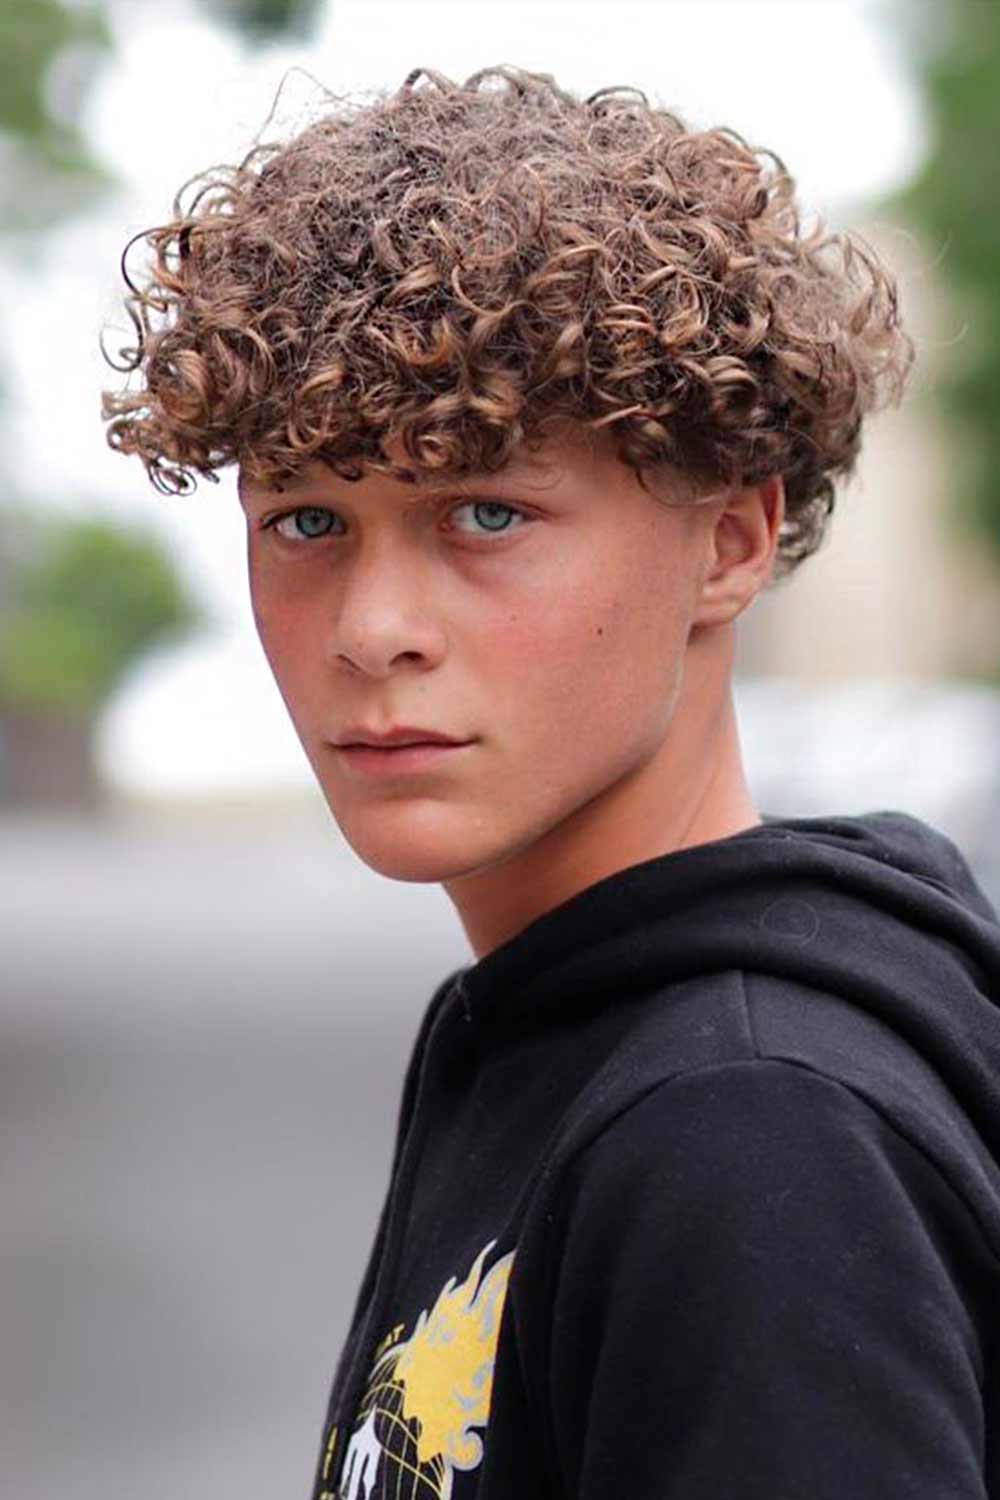 Bowl Cut Curly Hair #boyshaircuts #kidshaircut #boyhaircuts